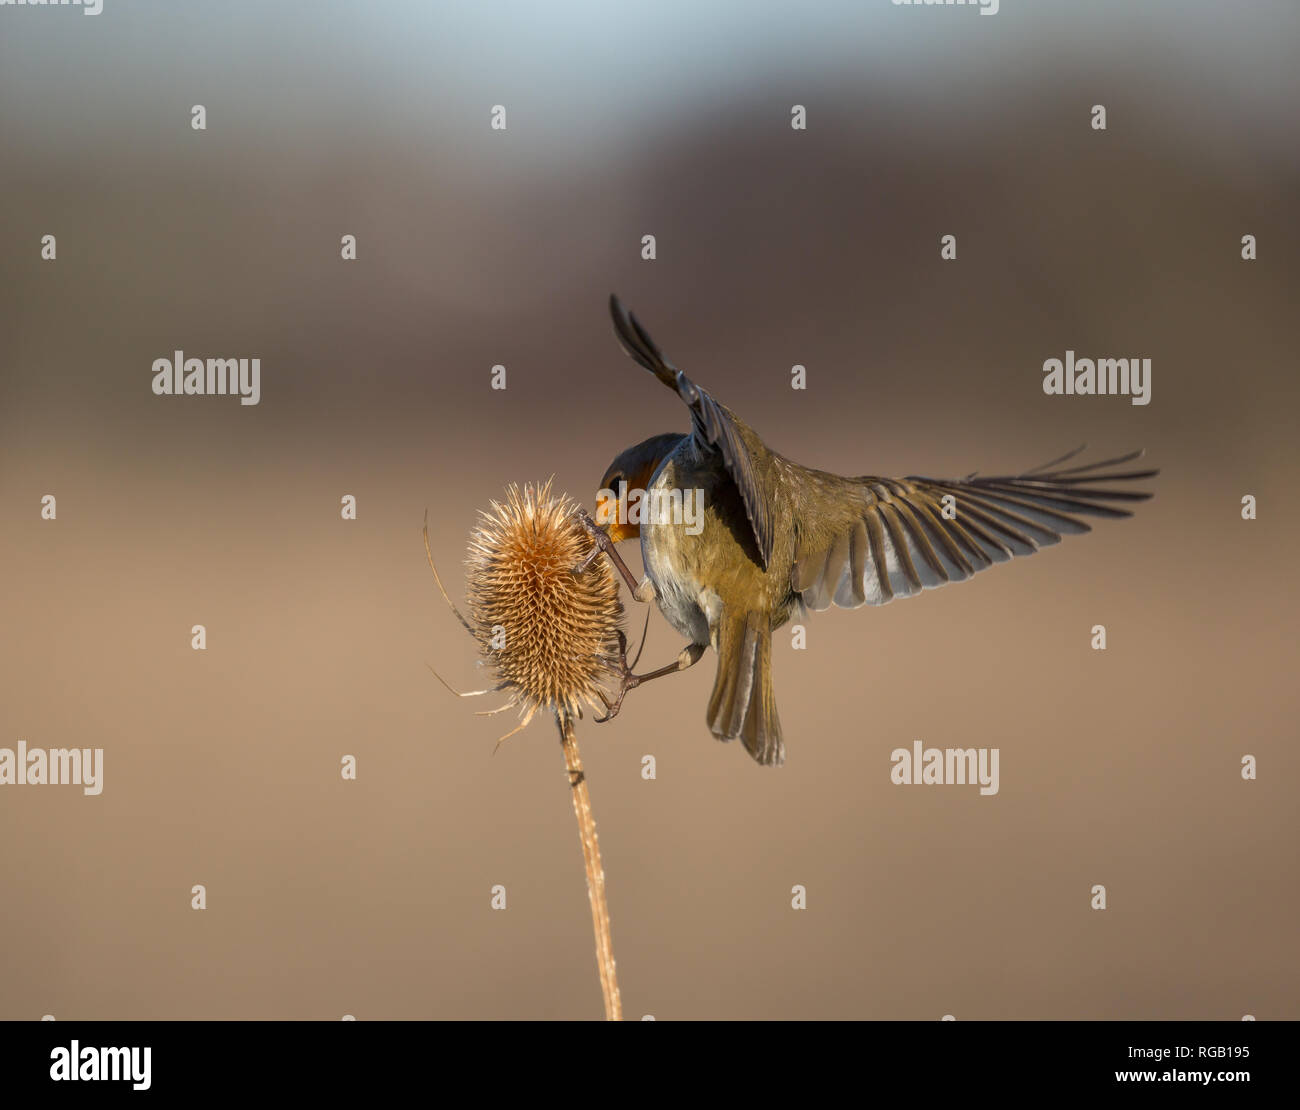 Vista trasera de cerca, salvaje Reino Unido robo pájaro (Erithacus rubecula) aislado al aire libre alimentación en espinoso alas de cucharadita propagación amplia. Robin en detalle desde atrás Foto de stock